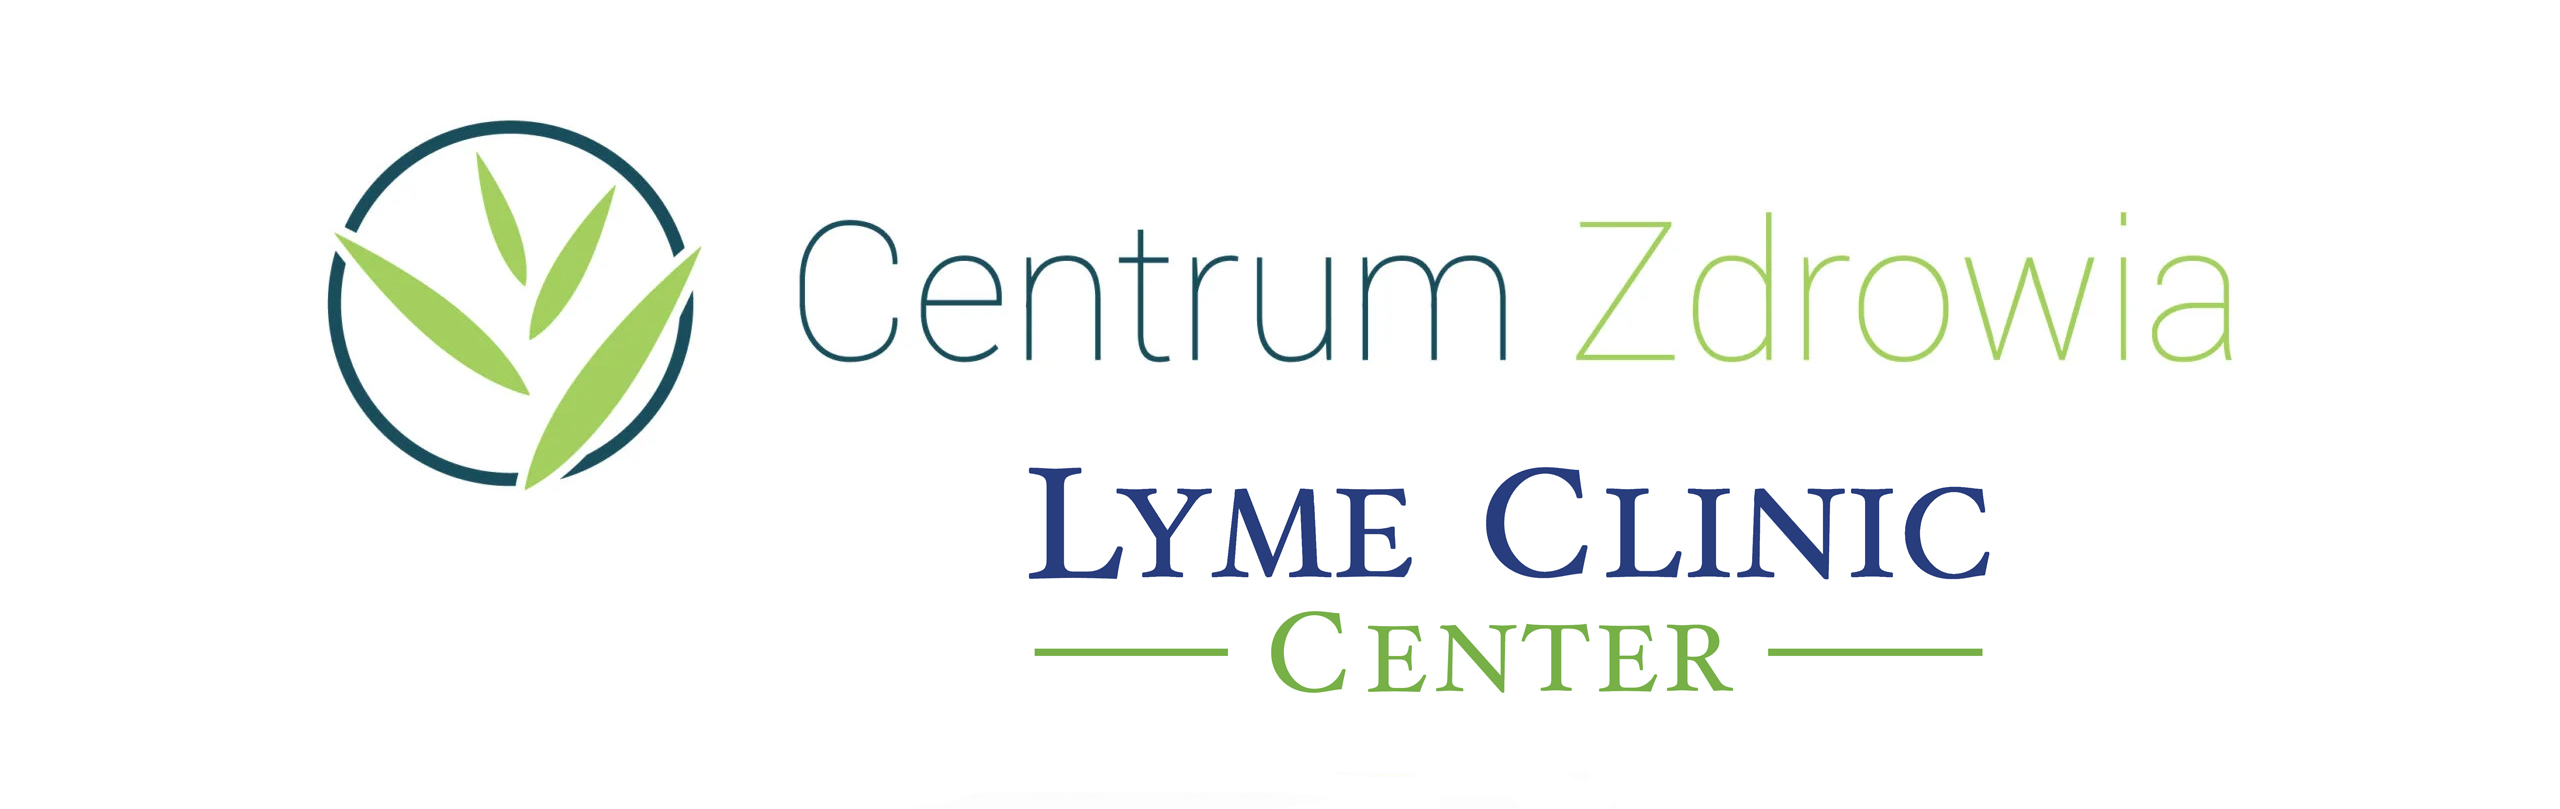 Lyme Clinic - Centrum Zdrowia Katowice